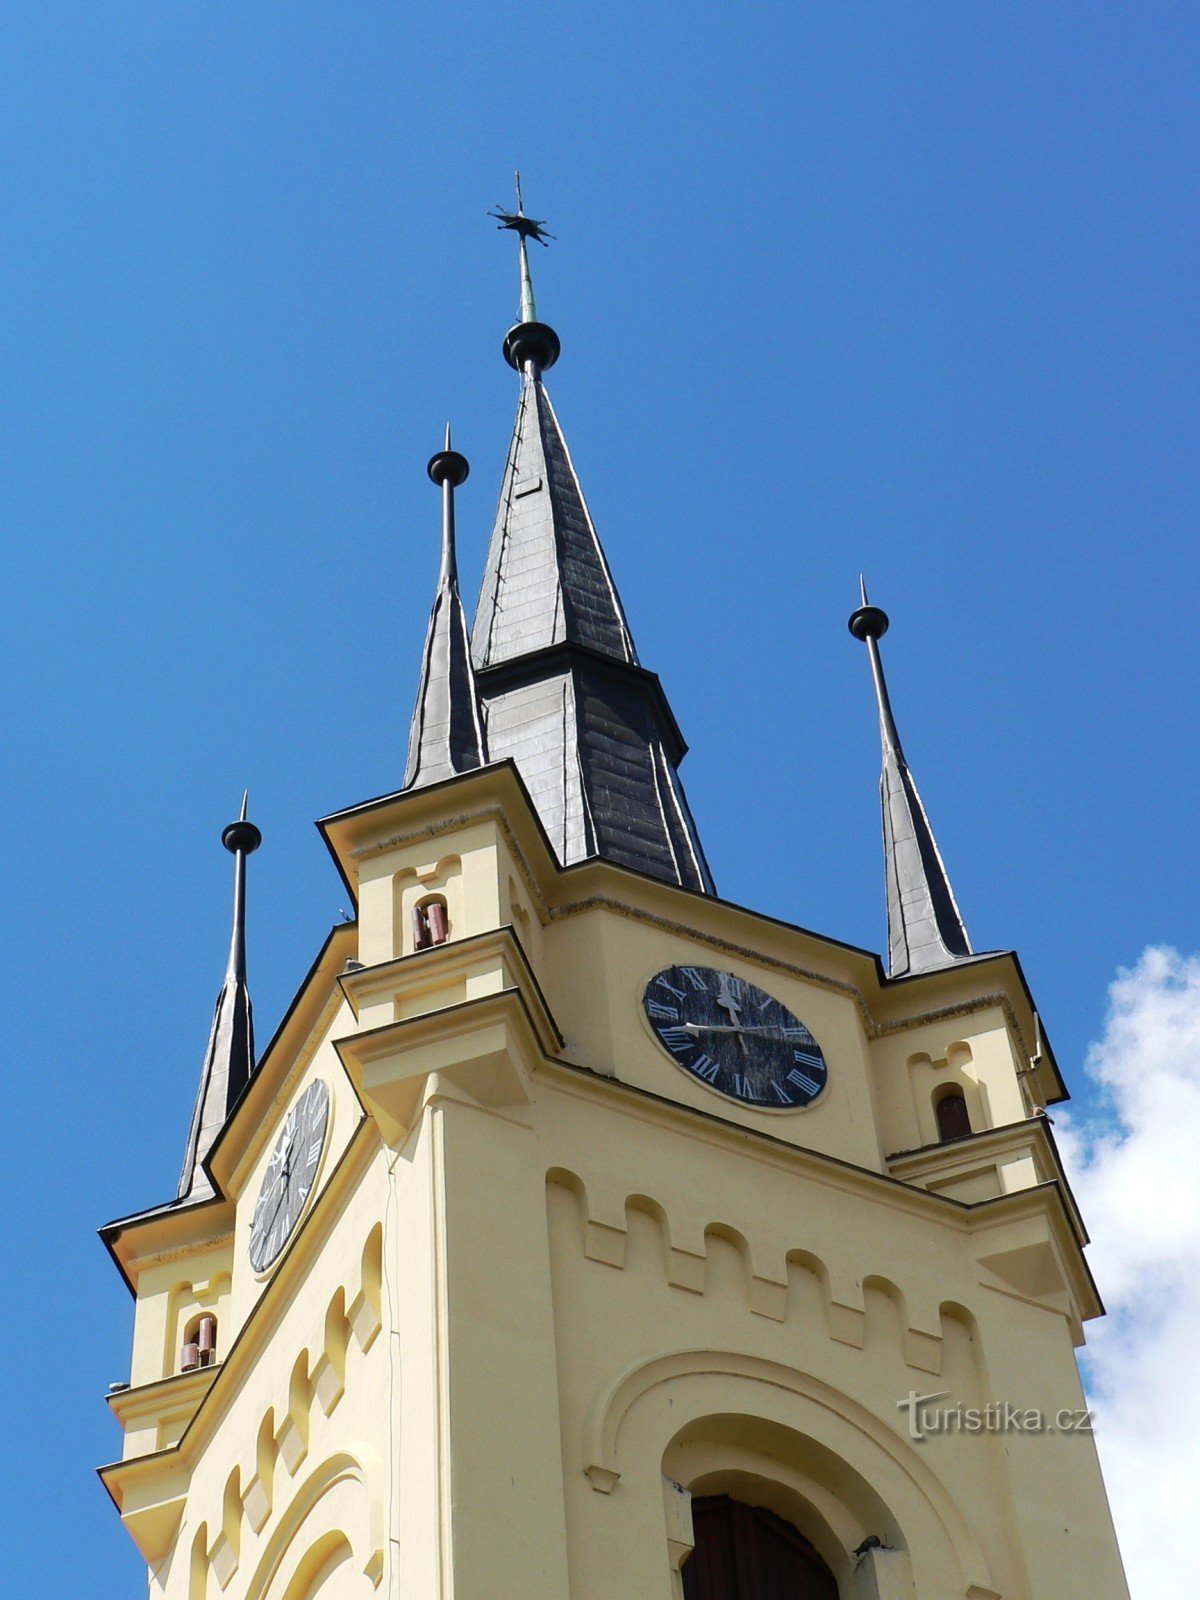 チャスラフ - チェコ兄弟福音教会の教会